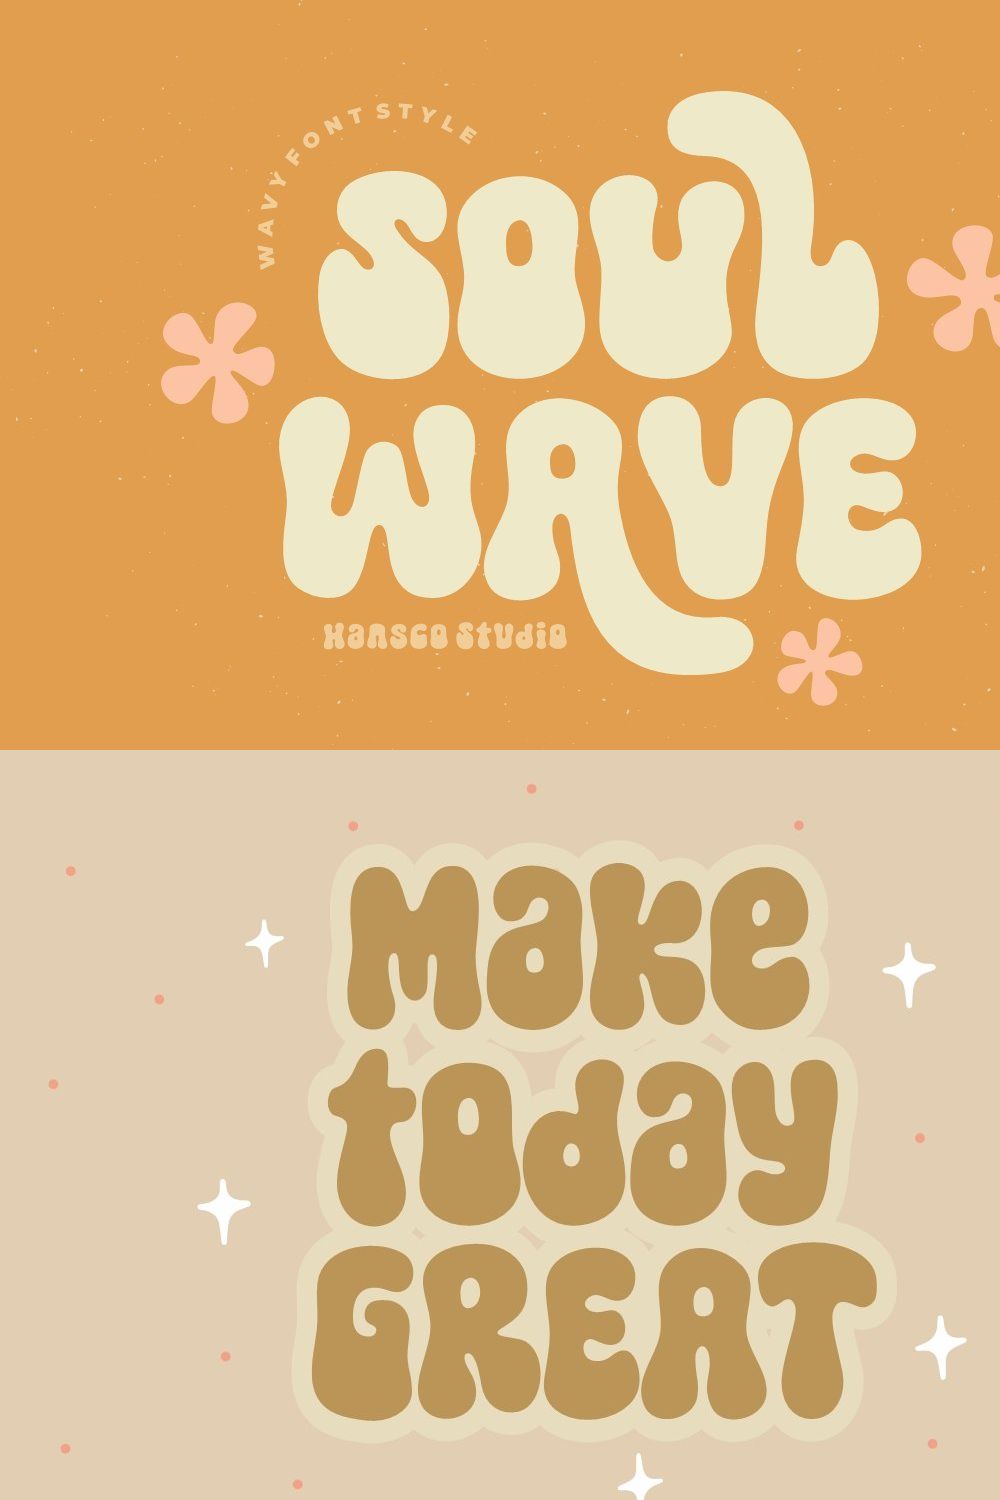 Soul Wave - Retro Wavy Font pinterest preview image.